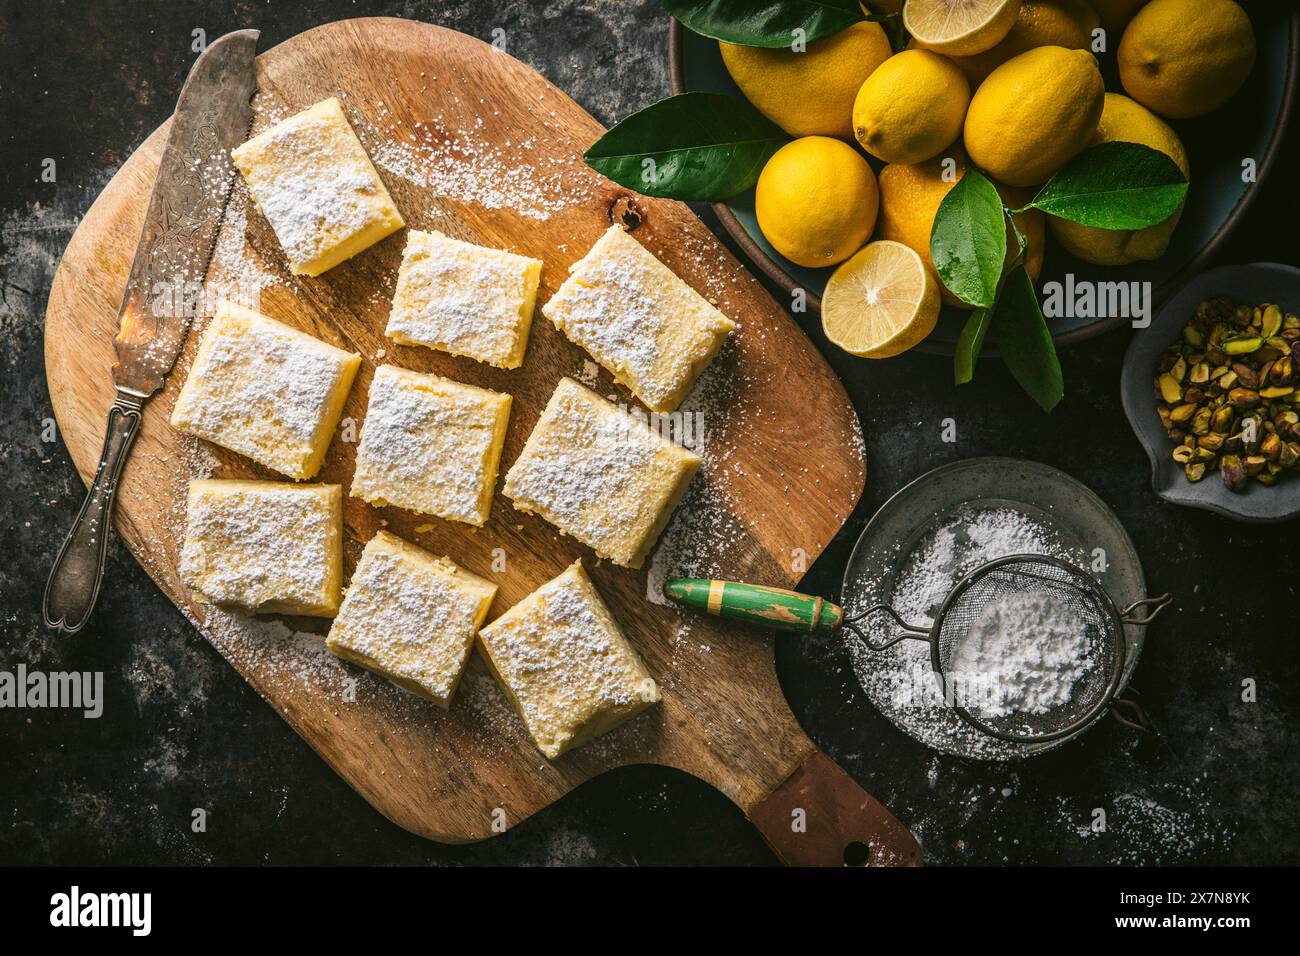 Torta al limone, tagliata a quadrati, su un tagliere di legno con coltello per torte, zucchero a velo e ciotola di limoni freschi Foto Stock